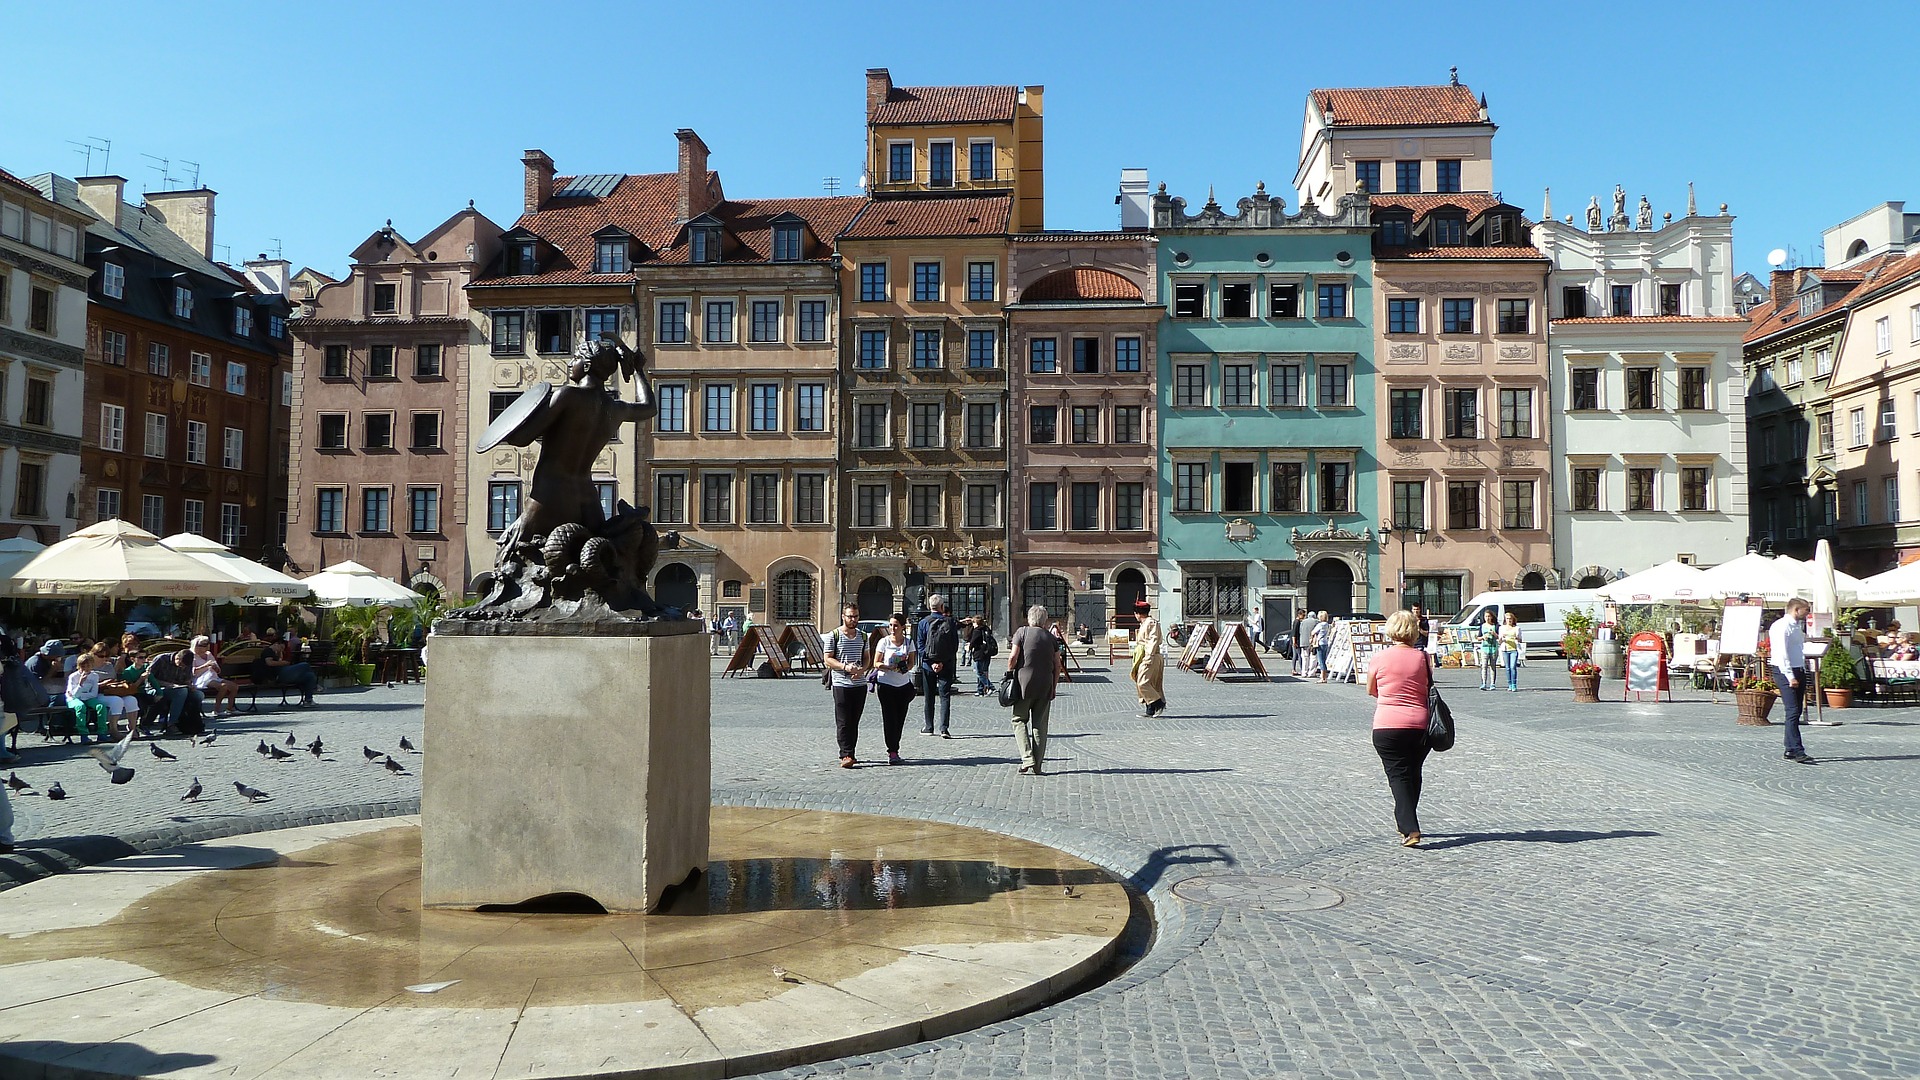 Weltkulturerbe Altstadt von Warschau - Städte Reise Warschau günstigen Flug + Hotel ab 59,98€ 2 Nächte